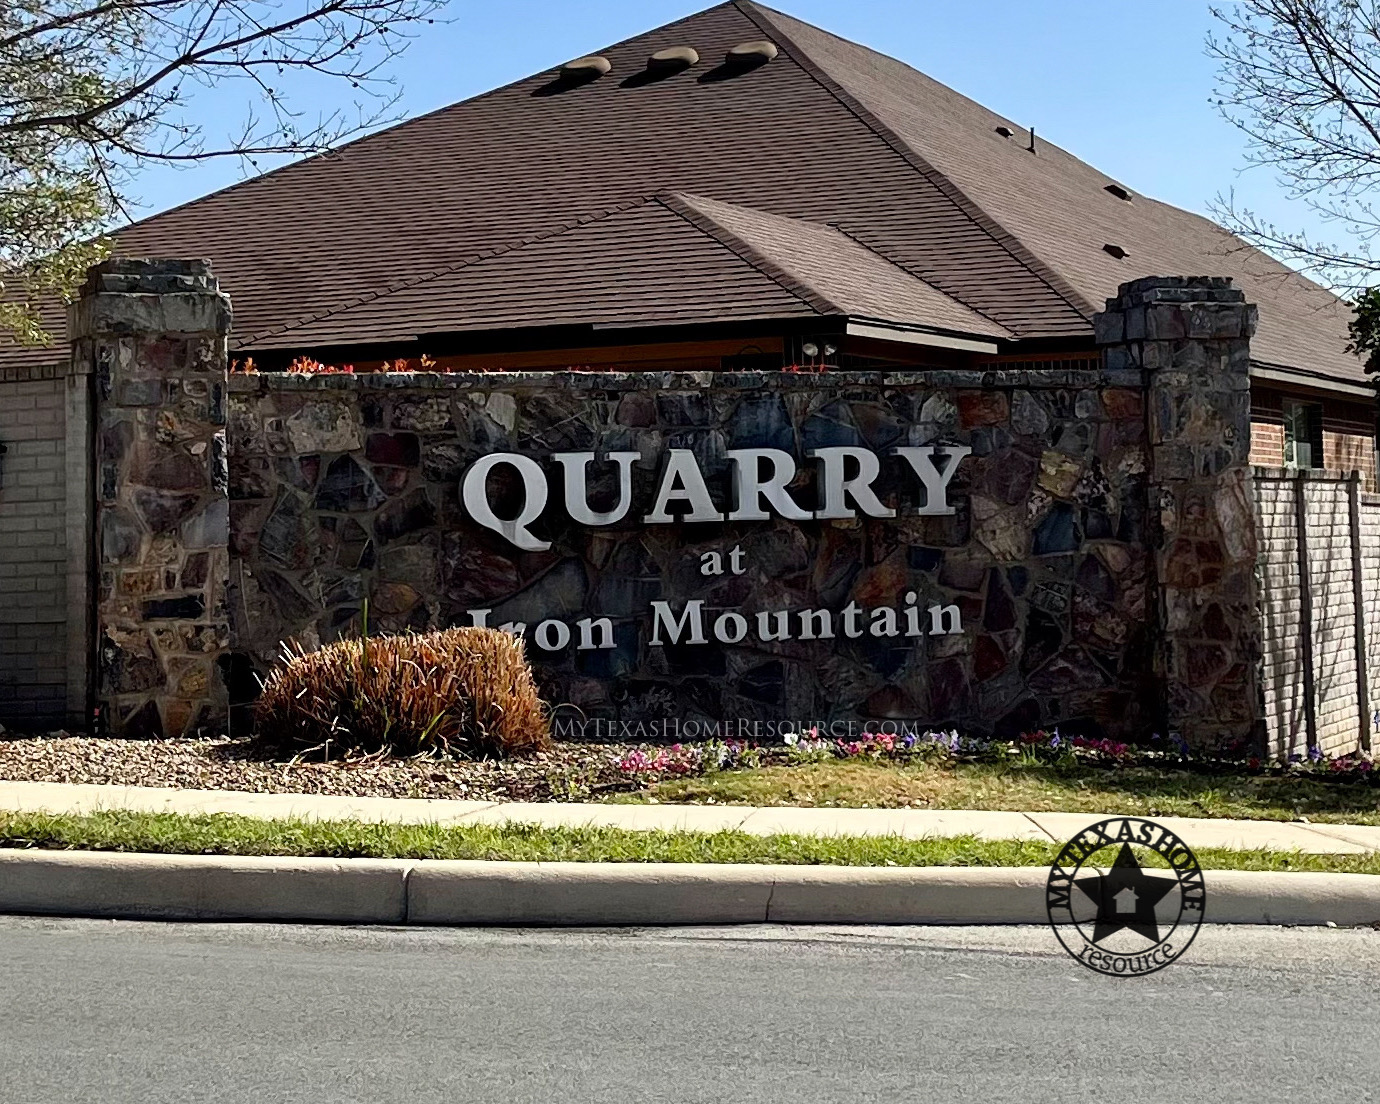 Quarry at Iron Mountain Community San Antonio, TX